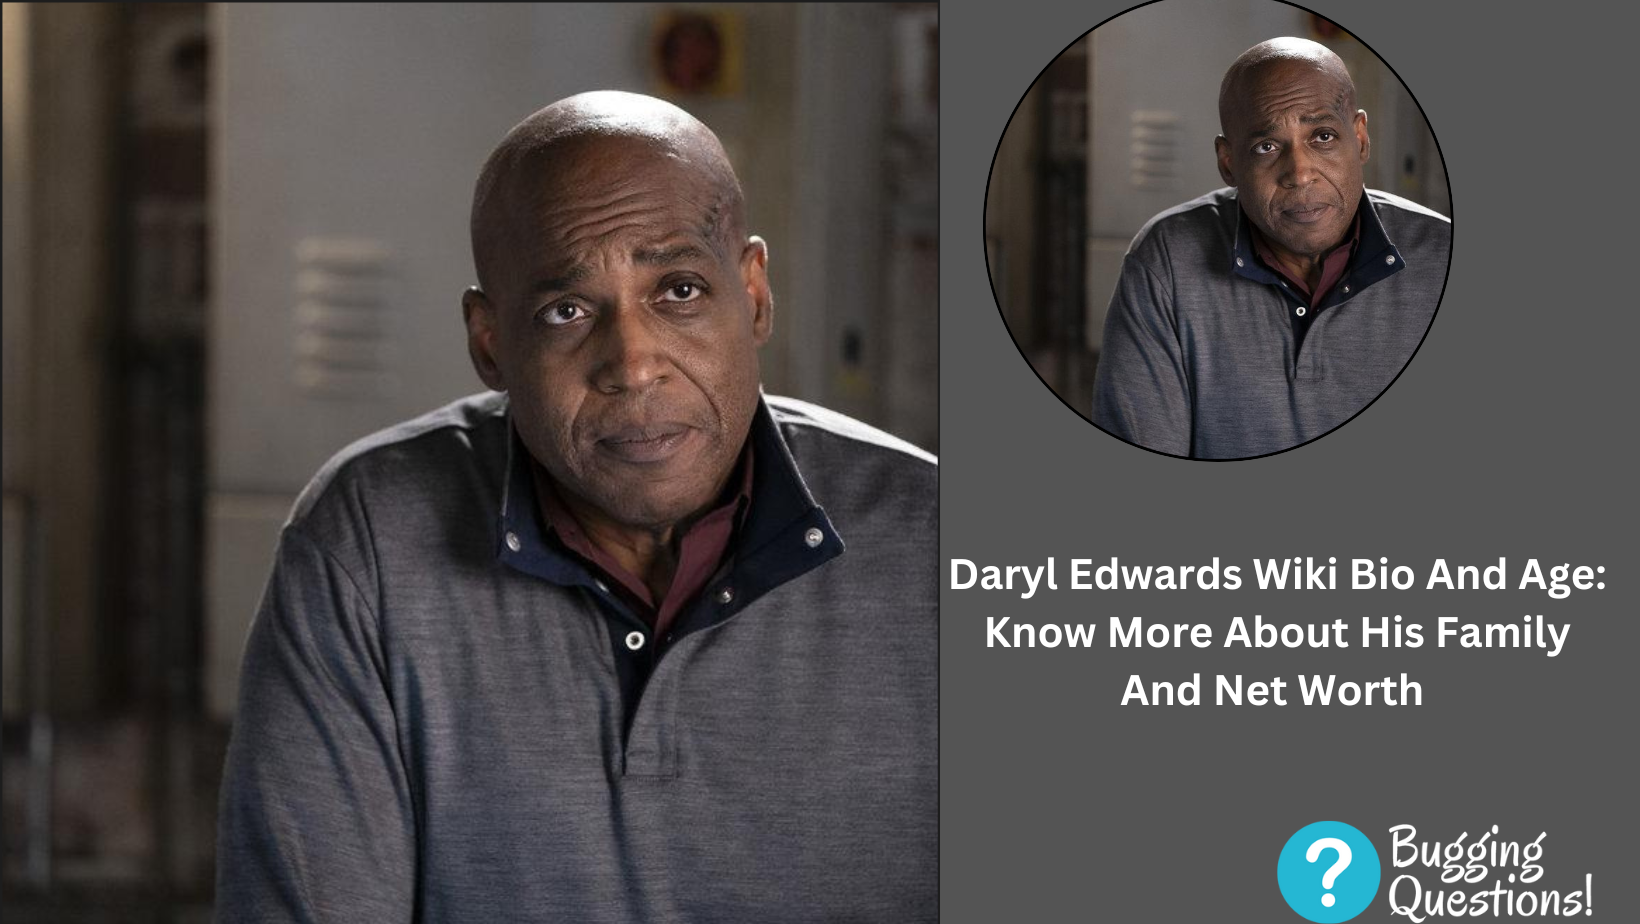 Daryl Edwards Wiki Bio And Age